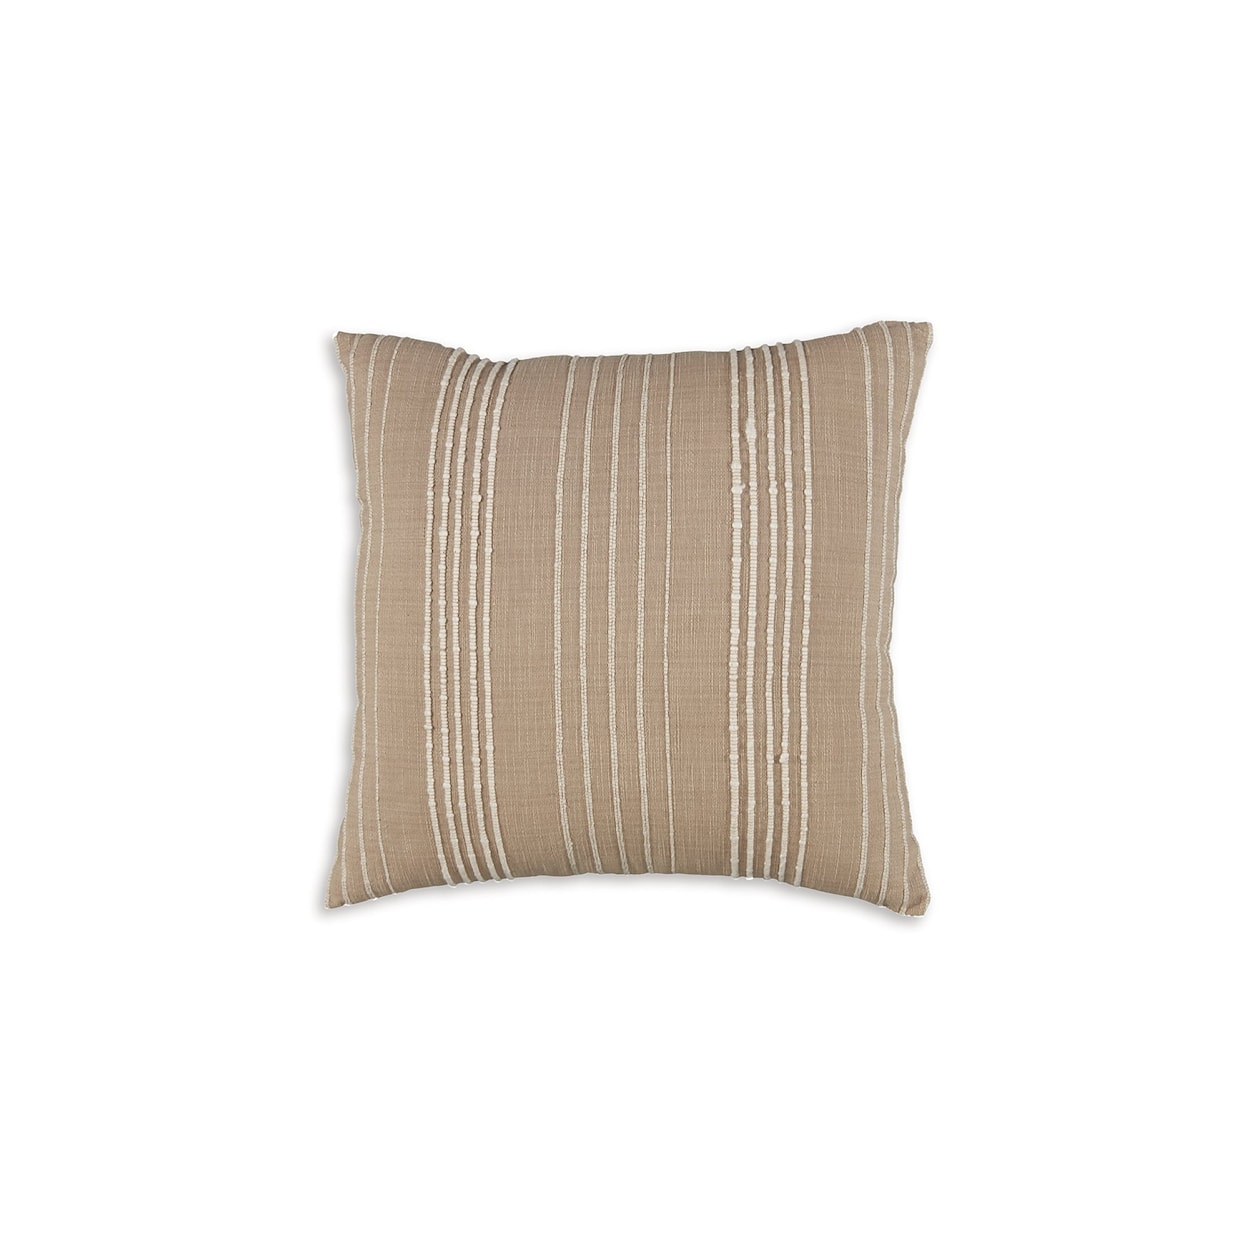 Benchcraft Benbert Pillow (Set of 4)